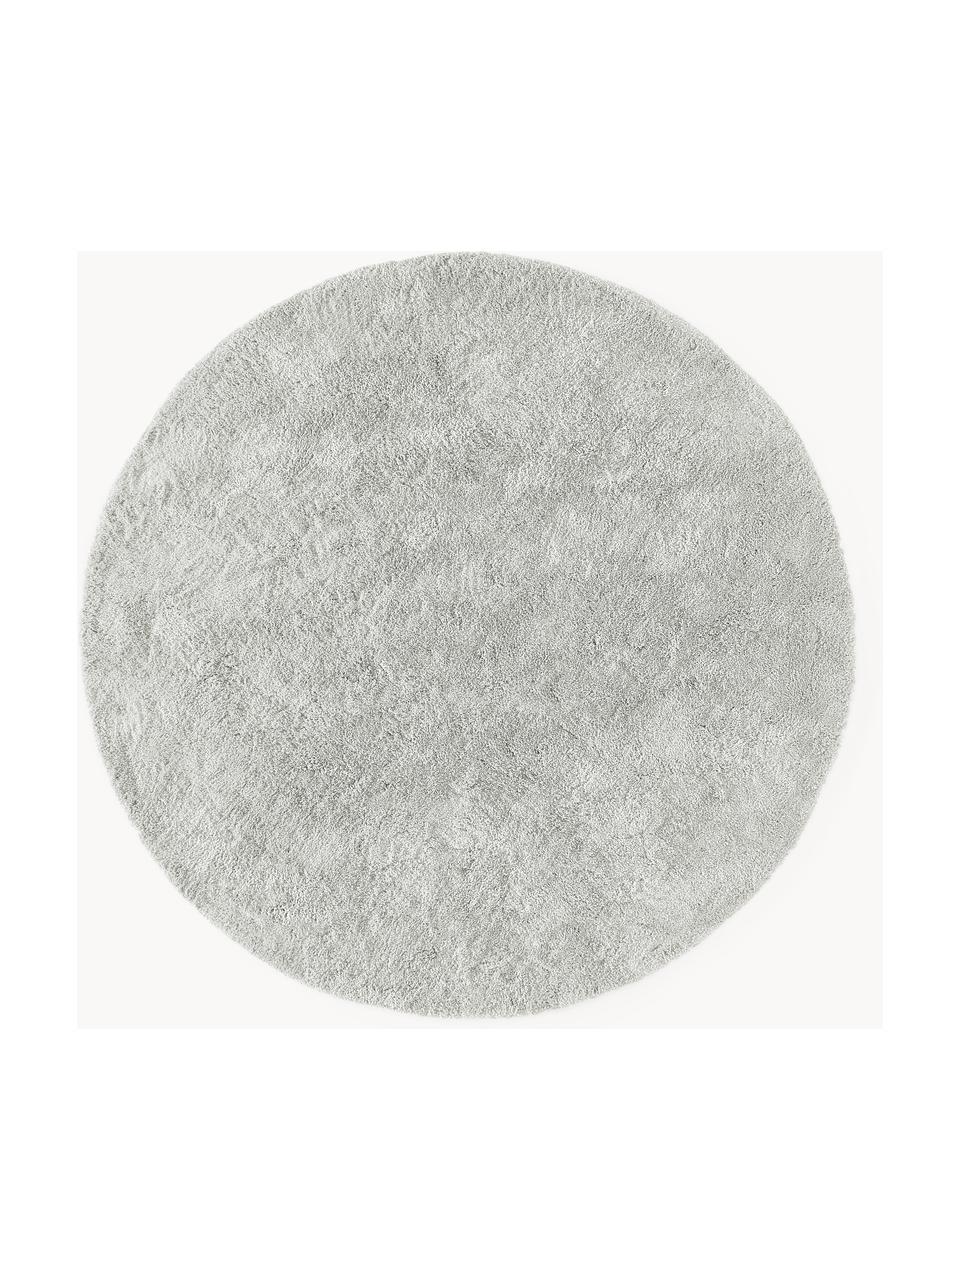 Tapis rond épais et moelleux Leighton, Gris clair, Ø 150 cm (taille M)